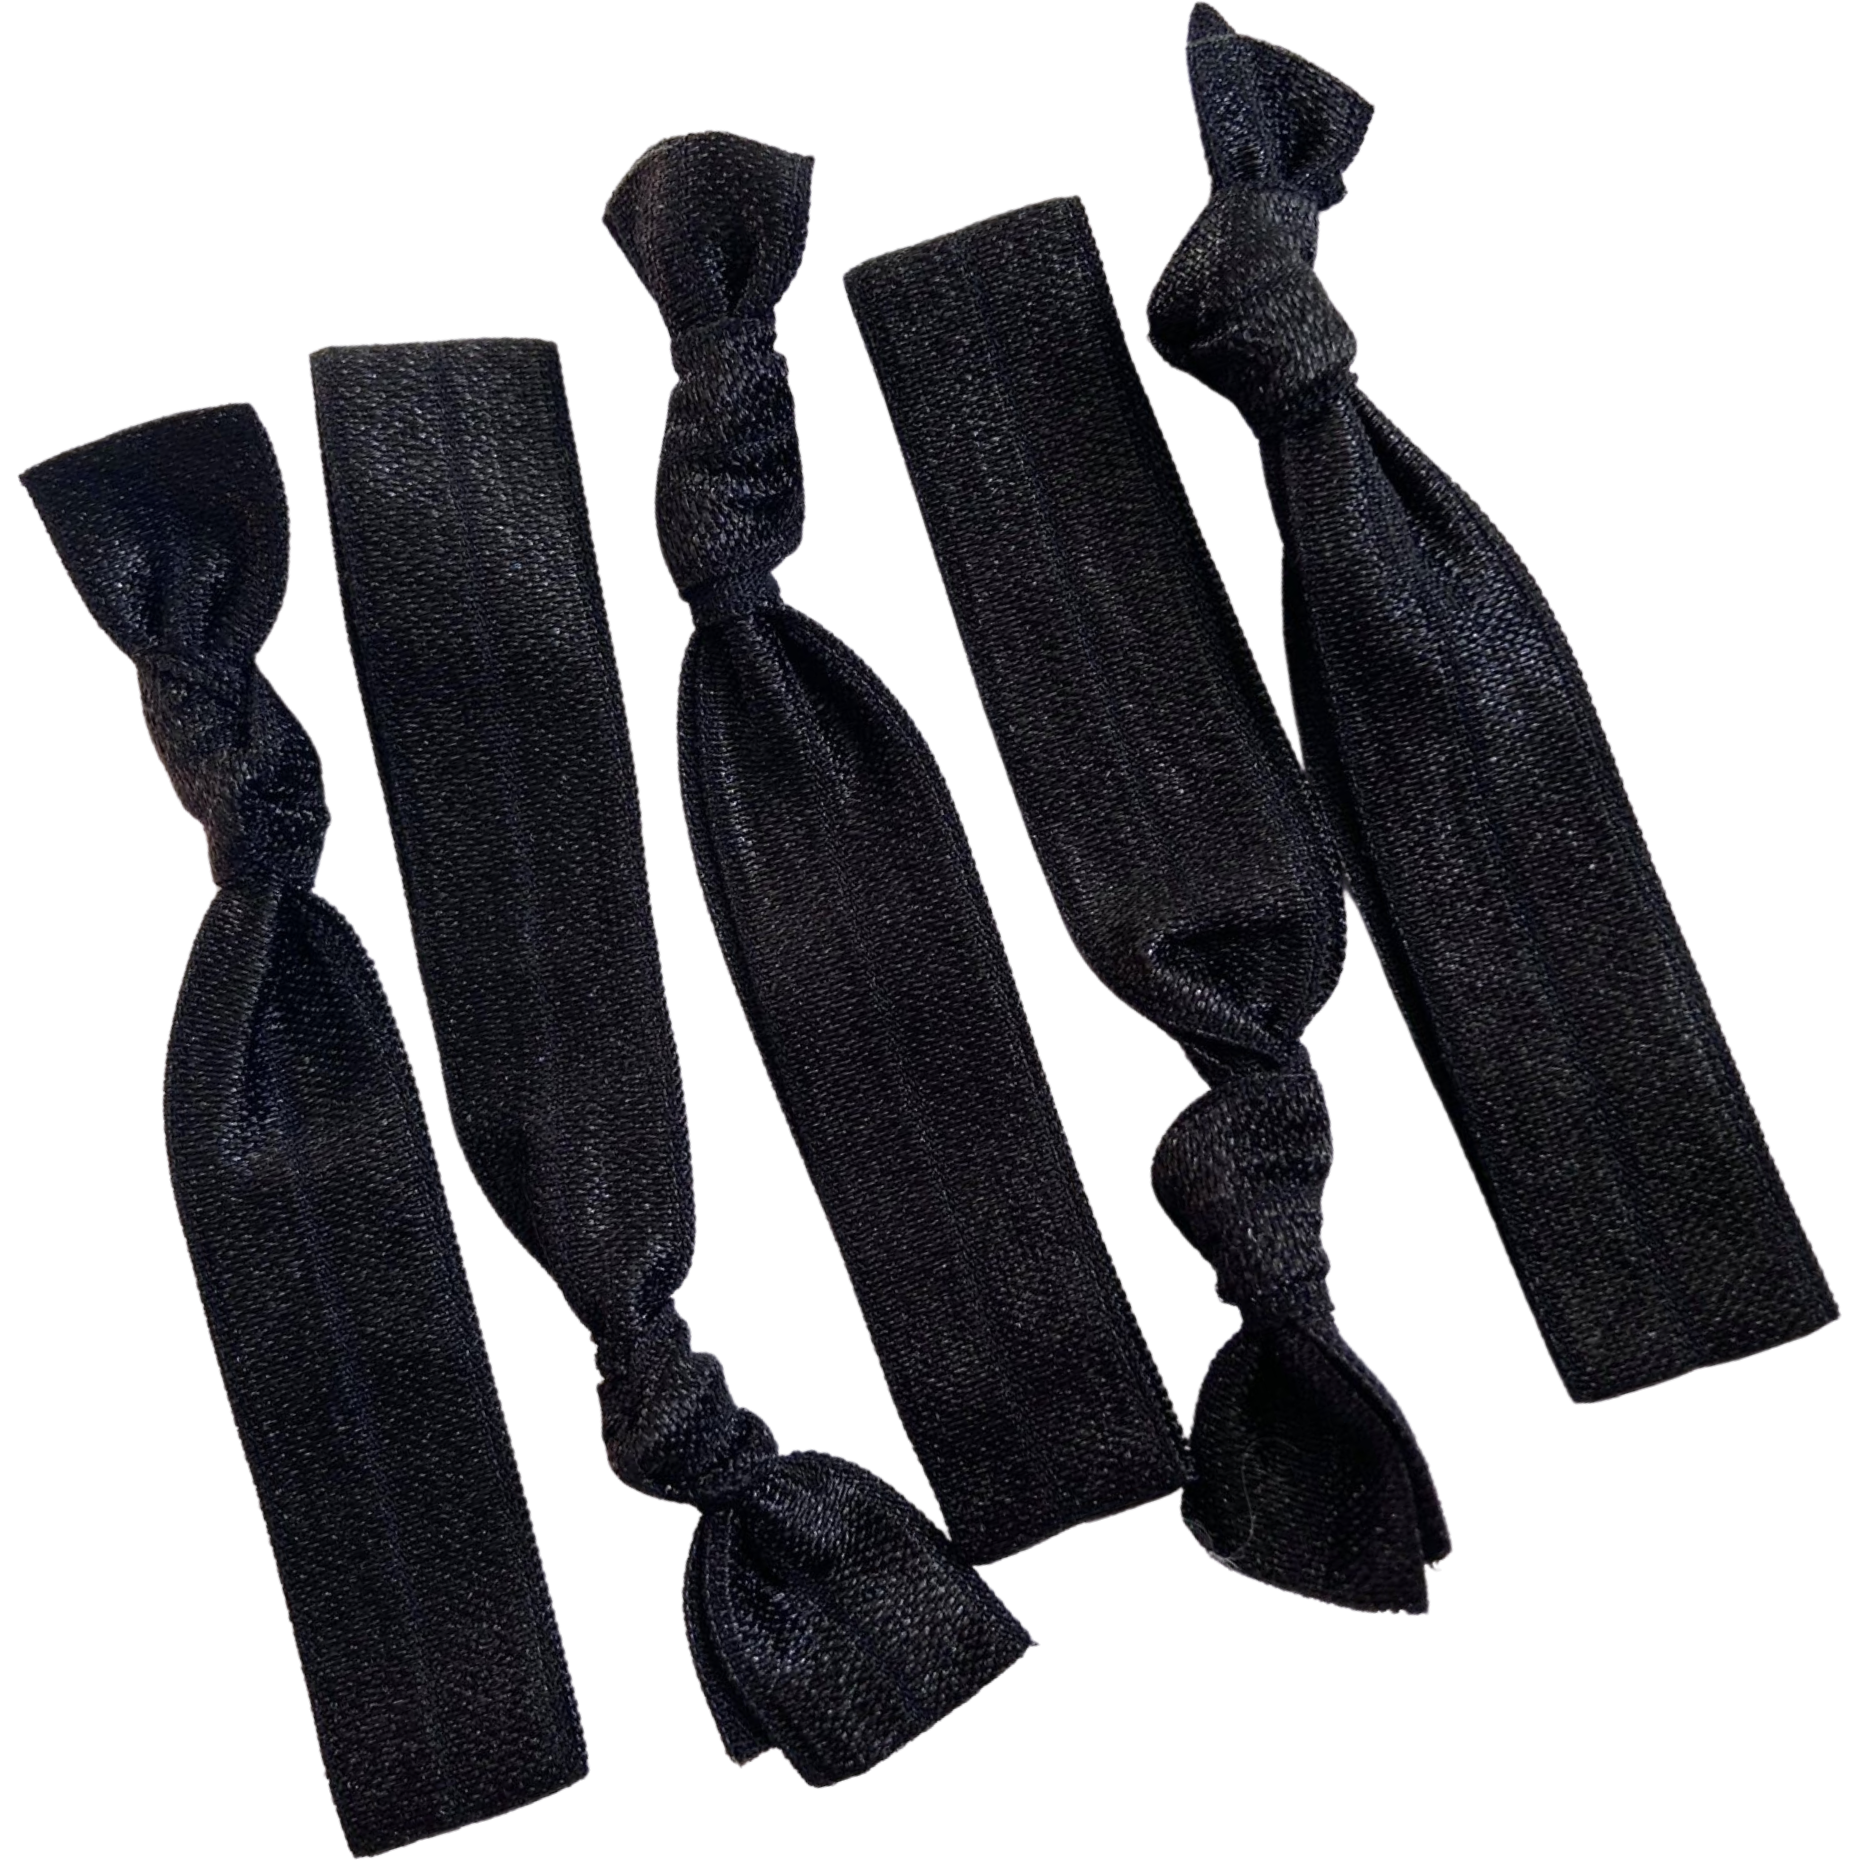 All Black Gentle No-crease Elastic Hair Ties at